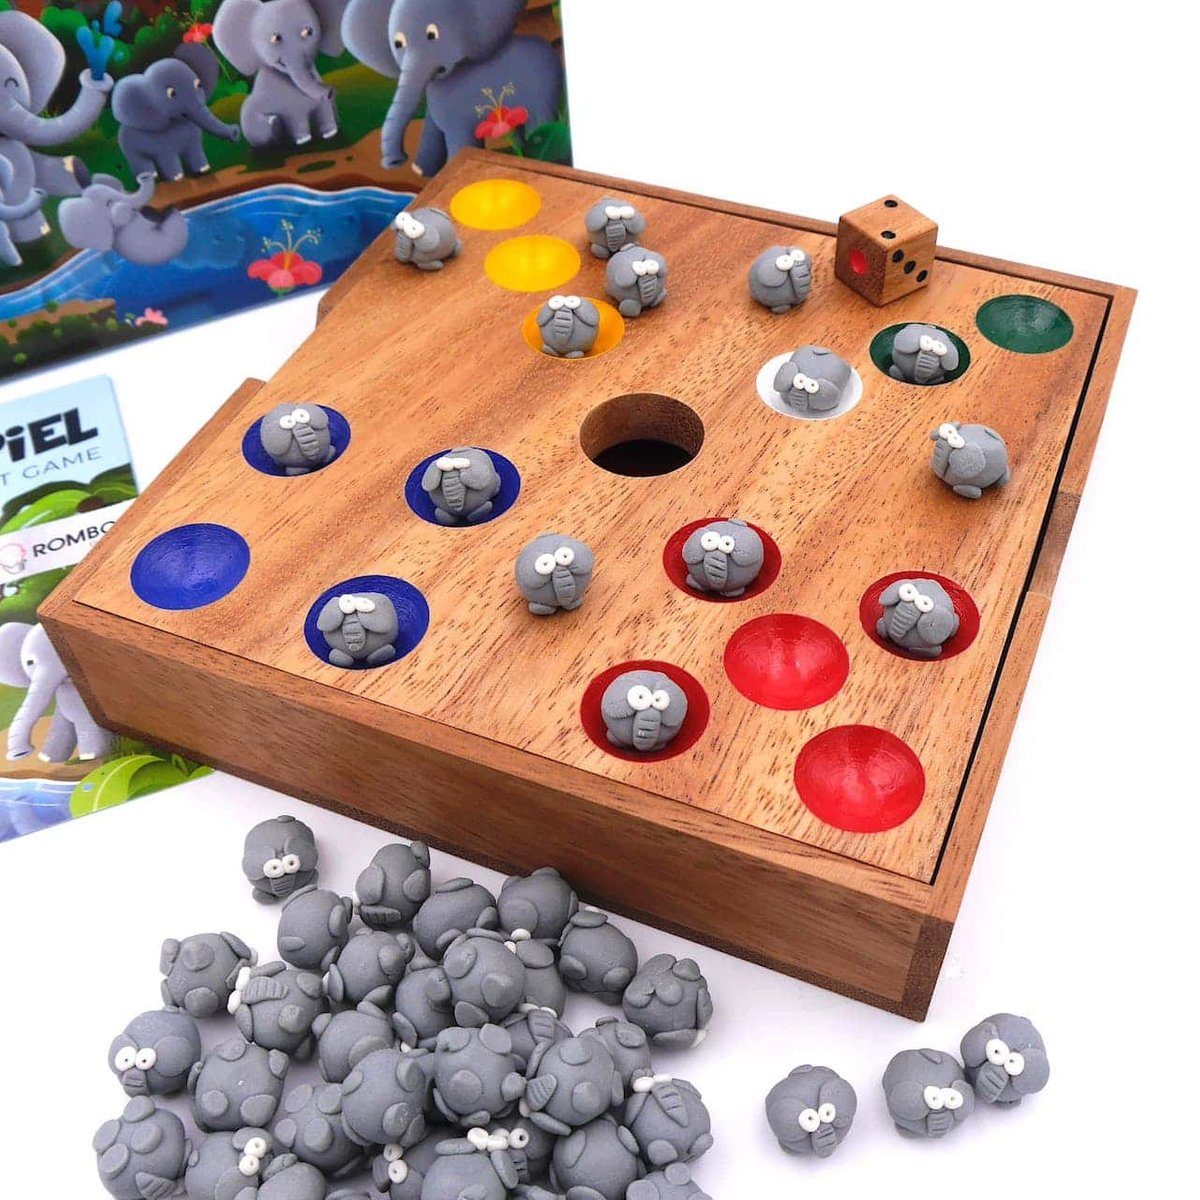 süßen ROMBOL die Spiel, mit Elefanten Würfelspiel - Brettspiel Elefantenspiel ganze Holzspiel Familie, Denkspiele für